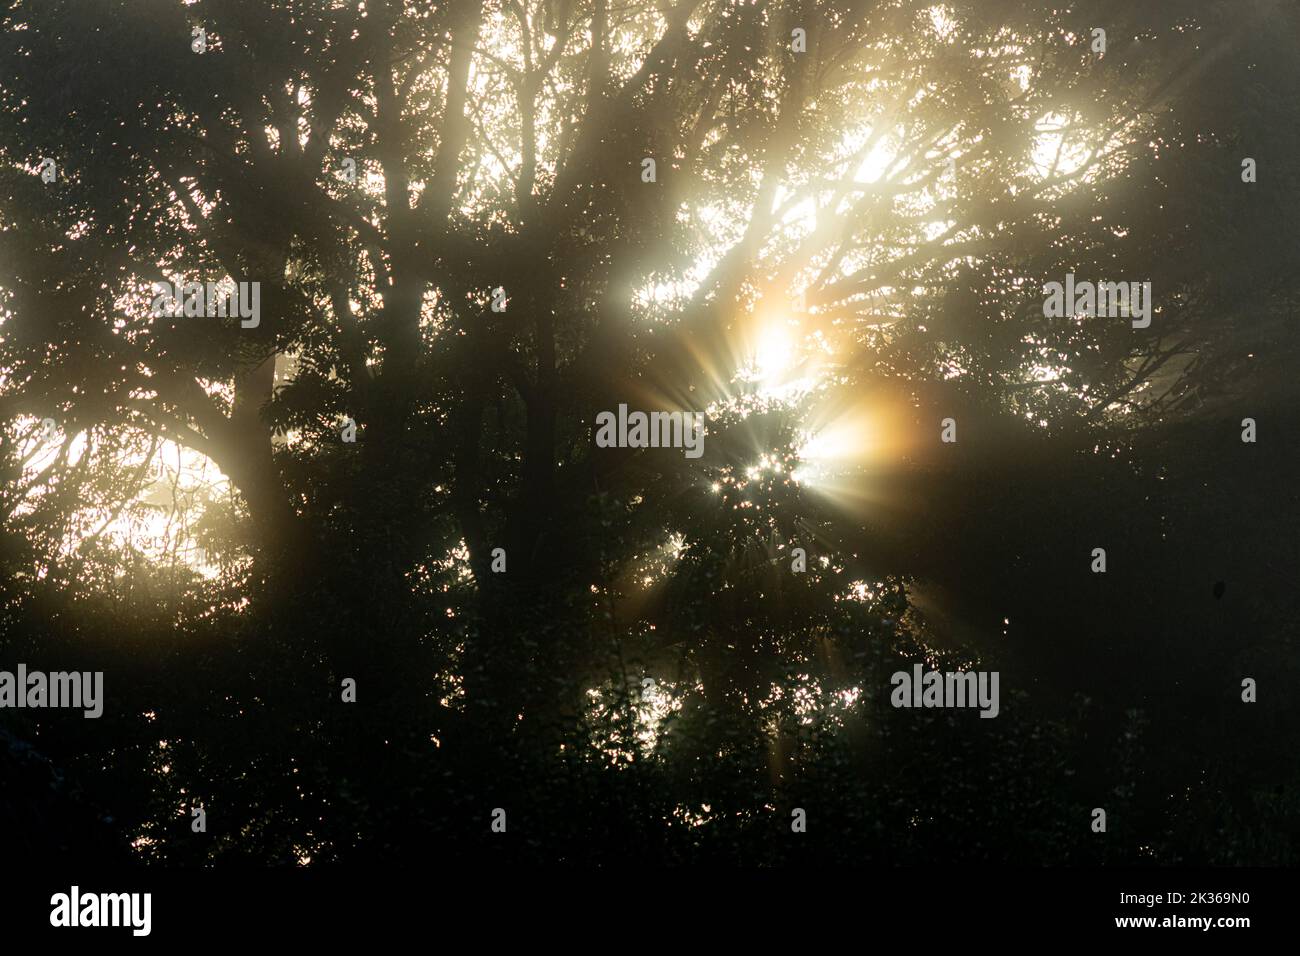 Foresta incantata - la luce solare che filtra attraverso rami in una mattina nebulosa dà un'impressione di luce magica Foto Stock